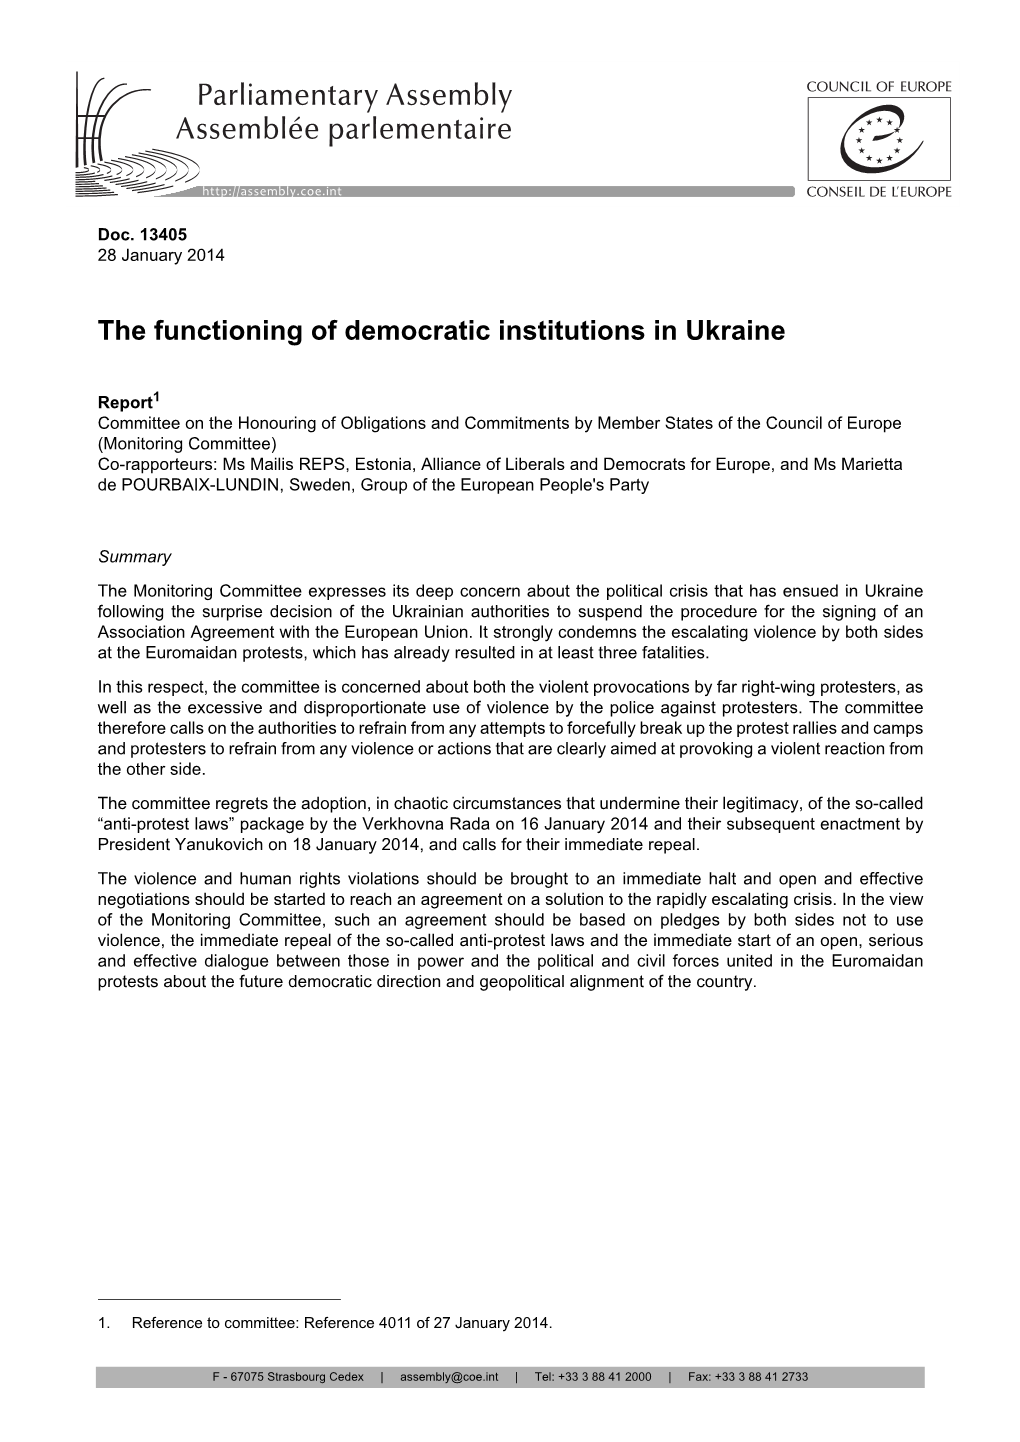 The Functioning of Democratic Institutions in Ukraine